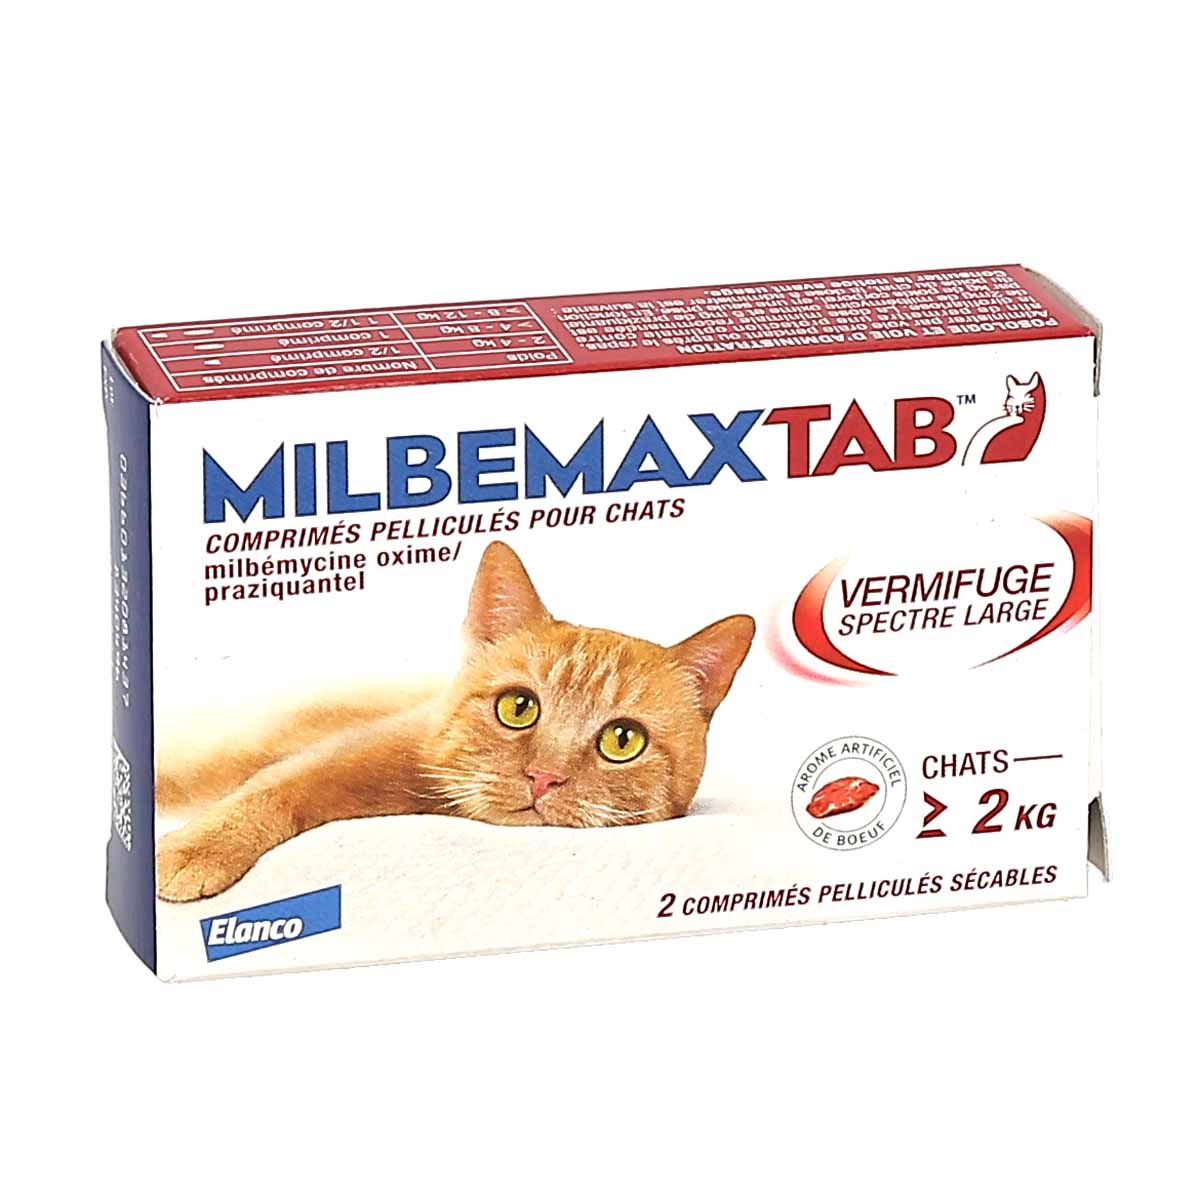 Milbemaxtab Vermifuge Chat de + de 2kg, boite de 2 comprimés - La Pharmacie  de Pierre